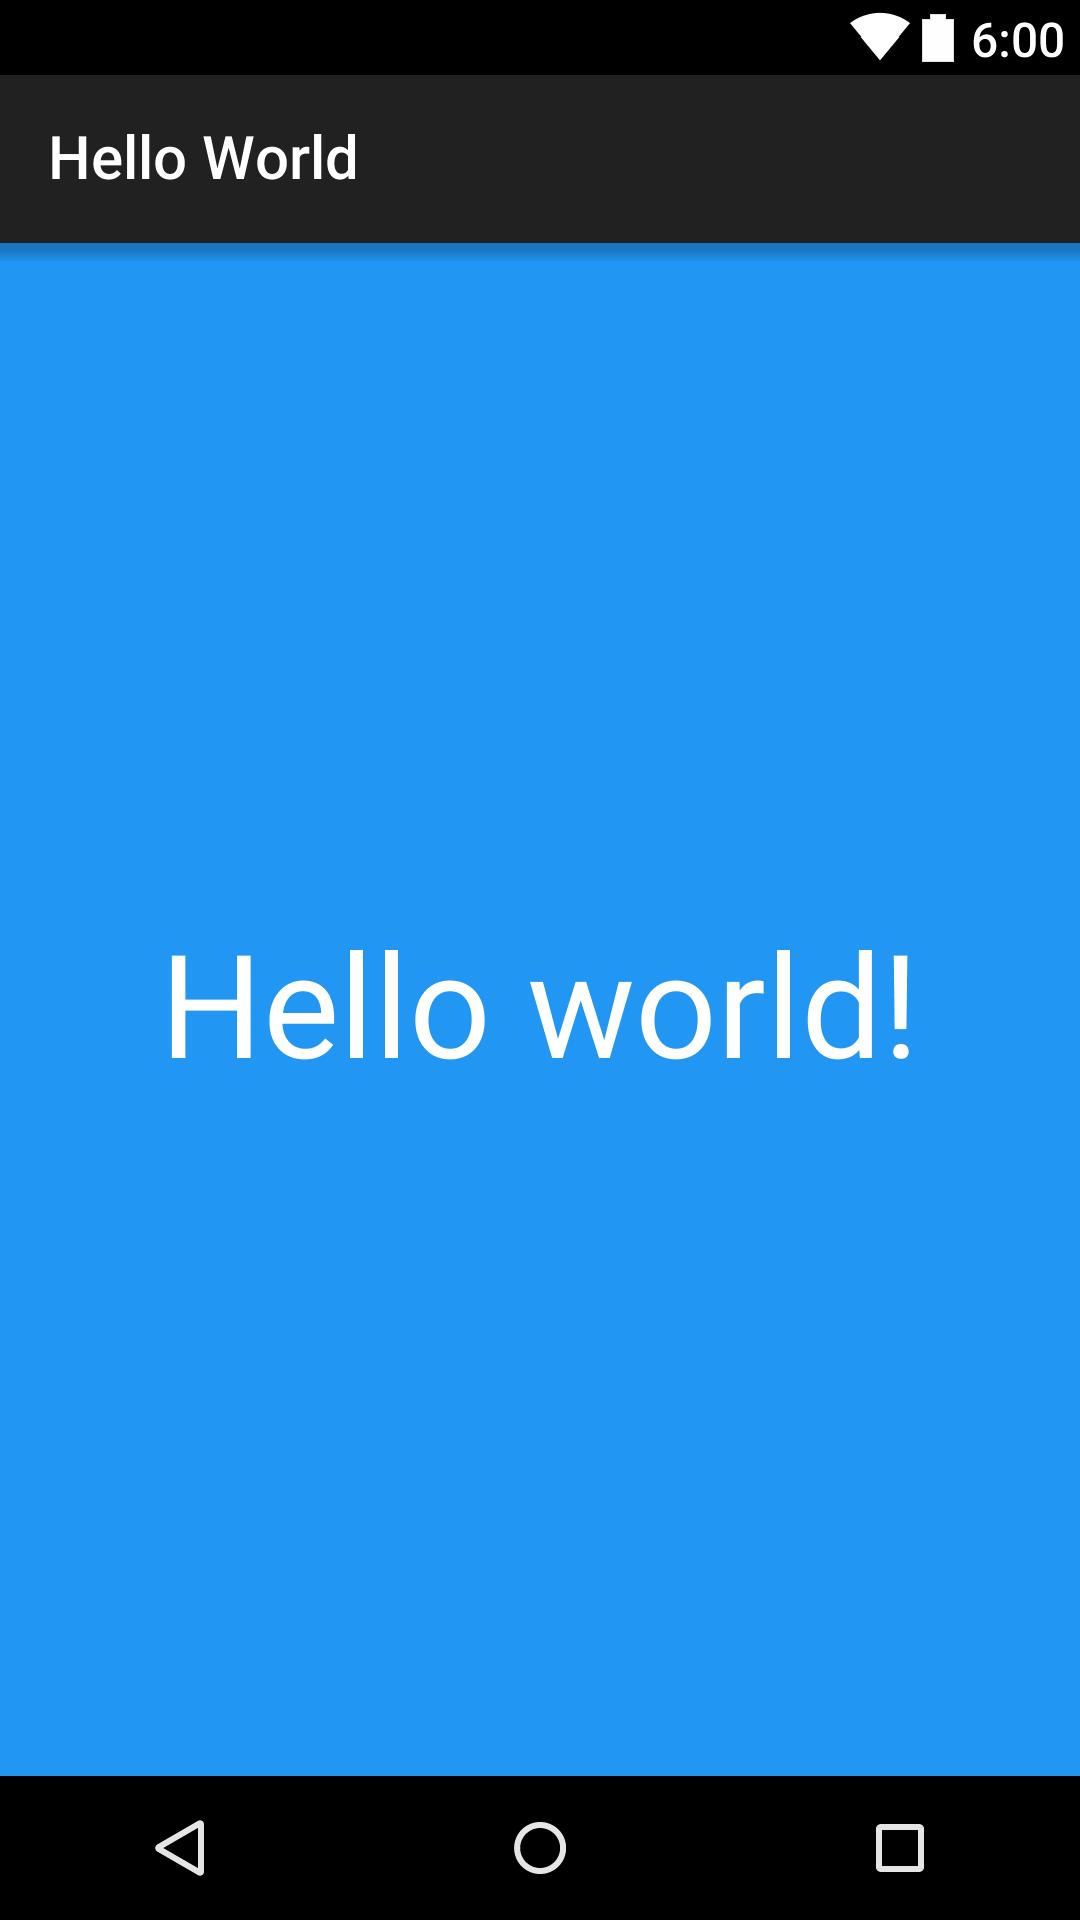 Hello world 2. Hello World. Hello World c. Hello World matchattea. Matchattea hello World фулл.